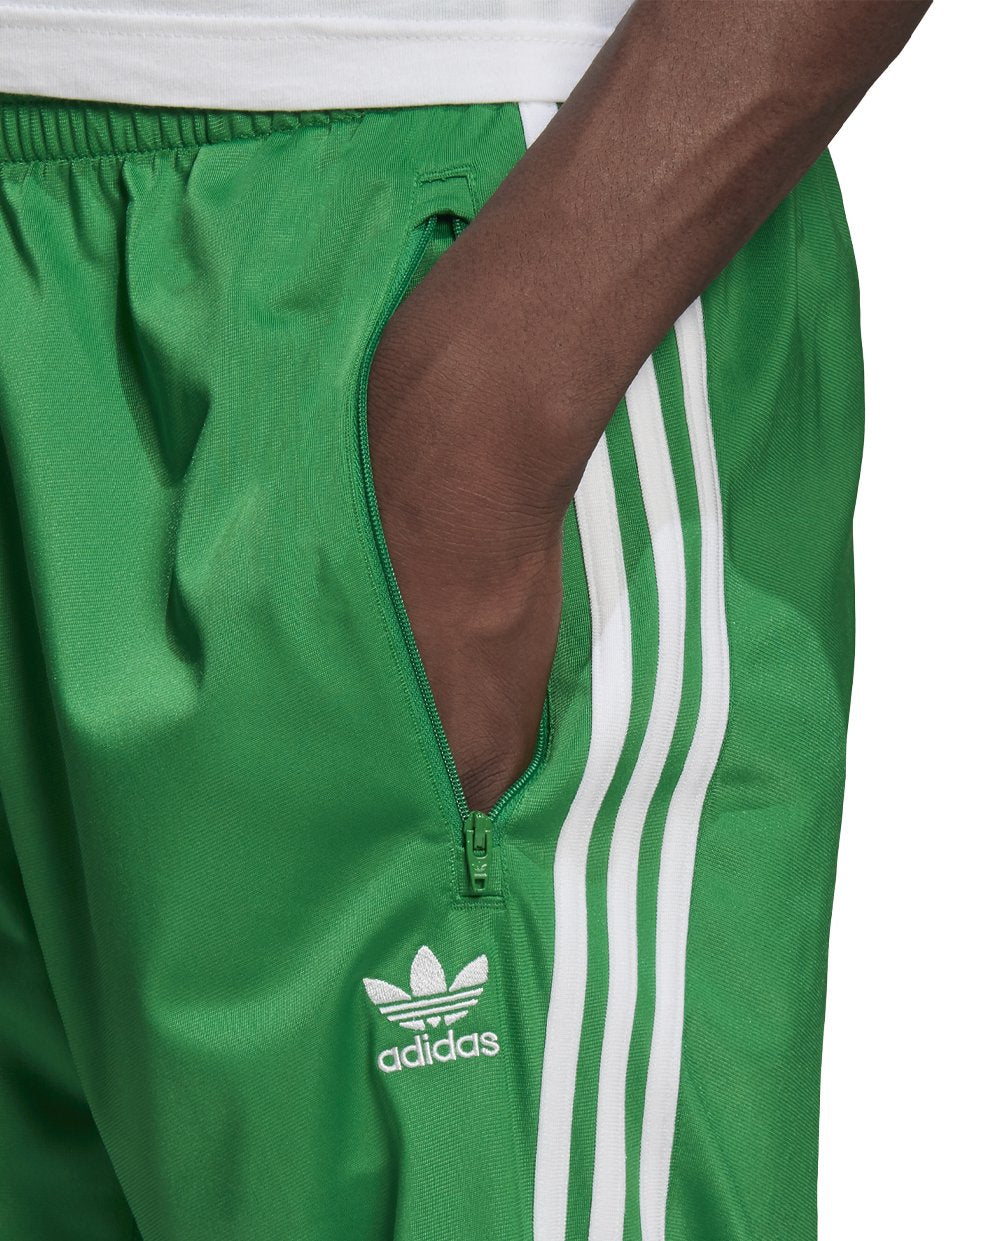 Adidas Calças Verdes com Riscas Brancas